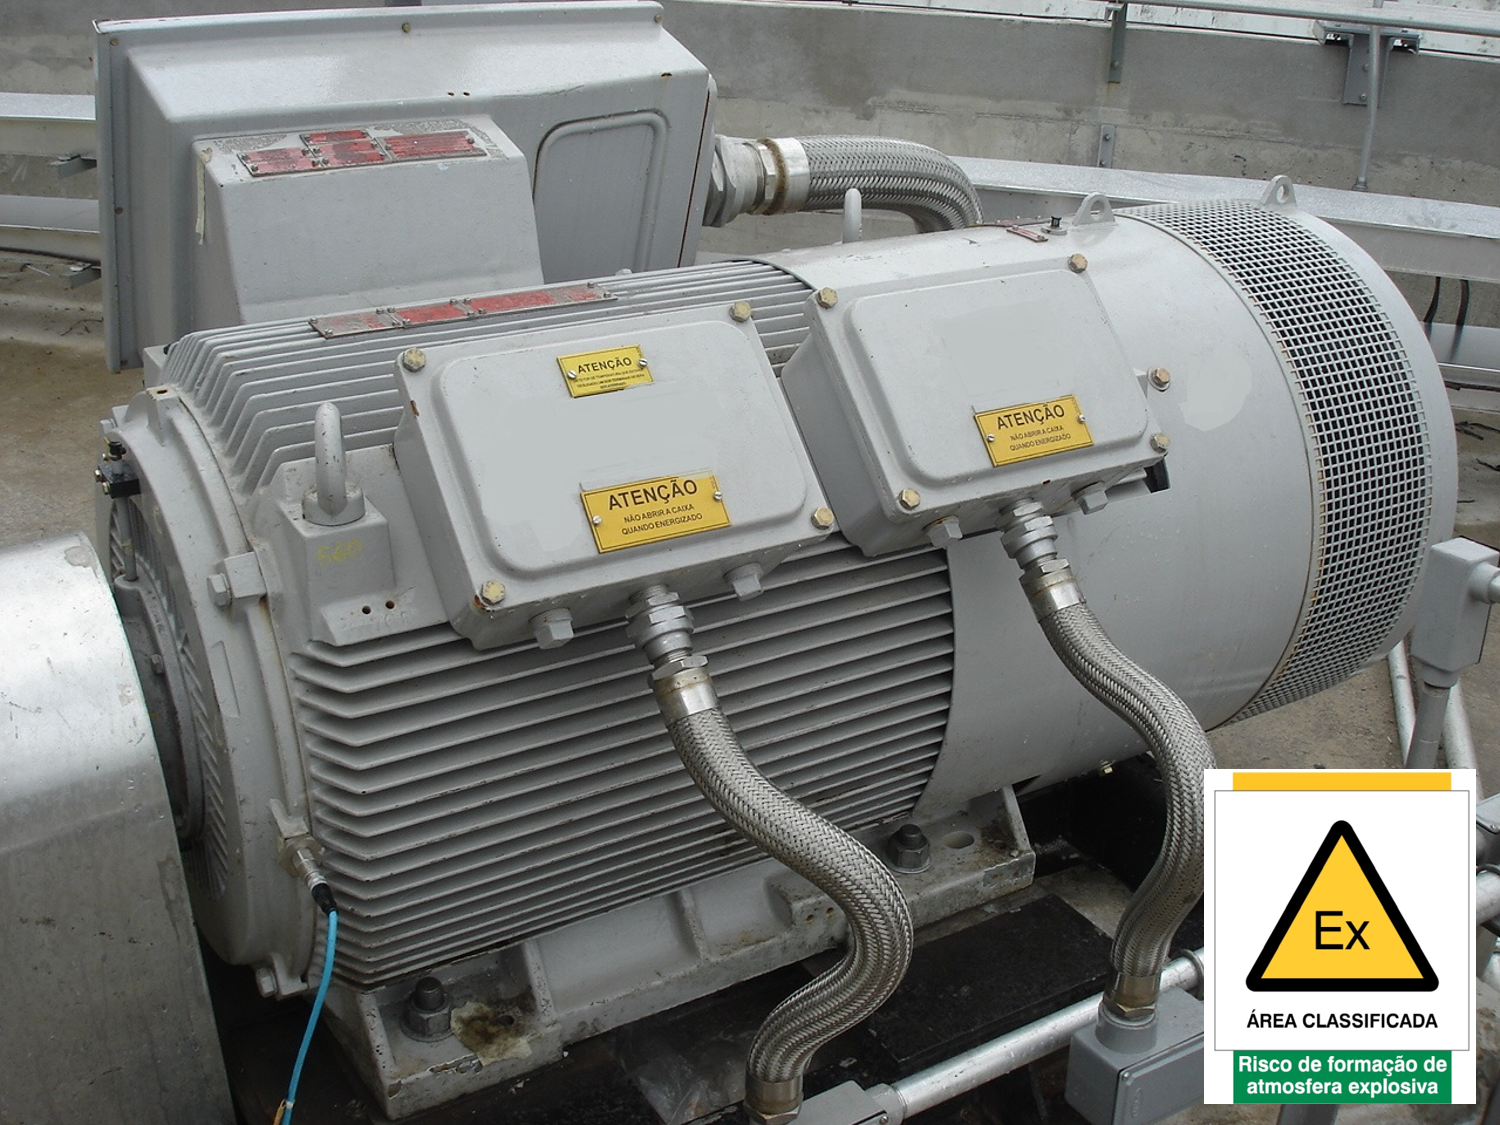 Motor Ex “ec” EPL Gc, com tensão nominal de 4.16 kV, instalado em área classificada Zona 2